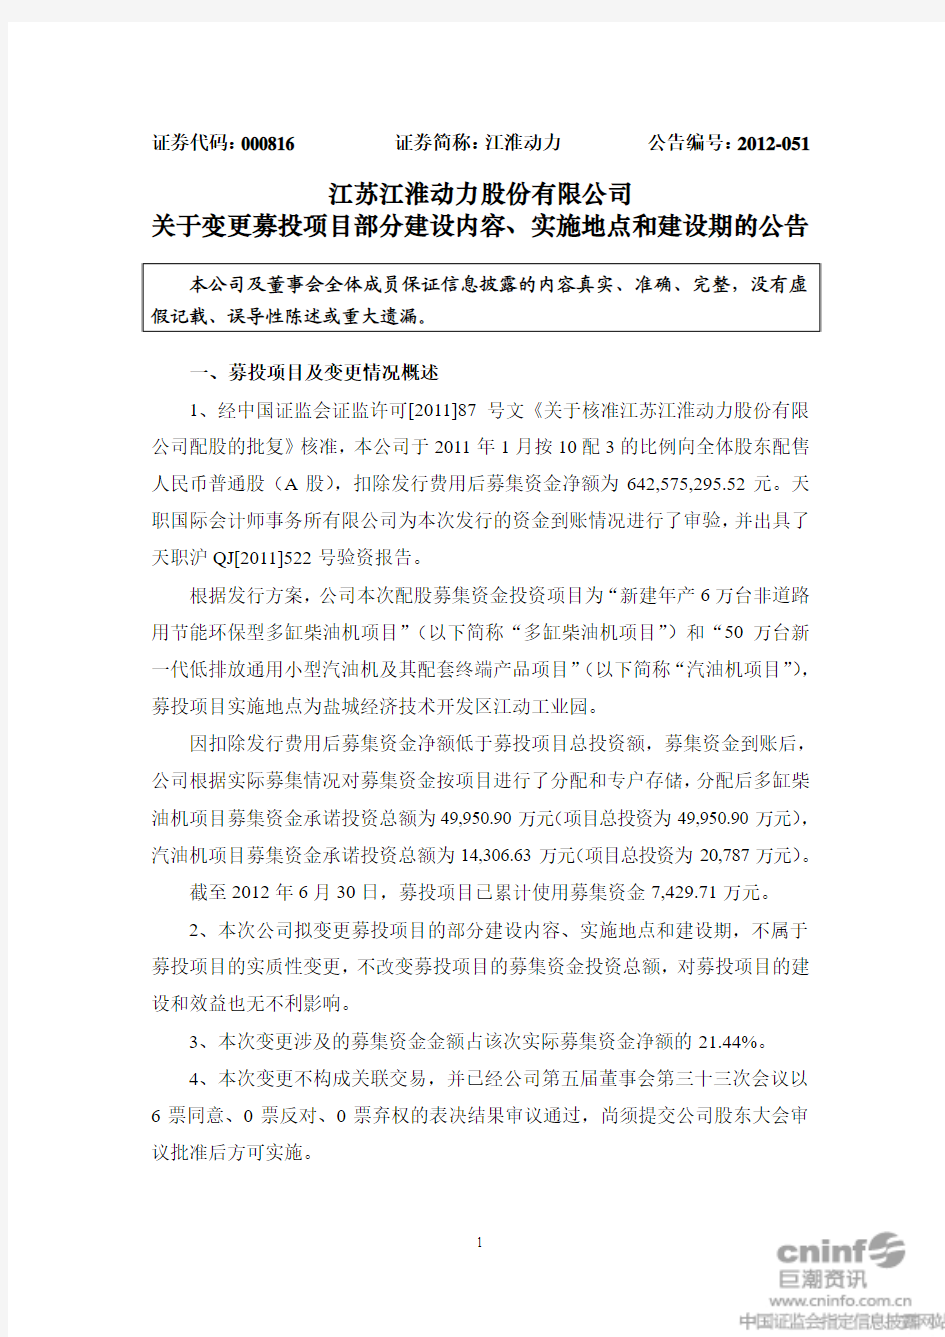 江苏江淮动力股份有限公司 关于变更募投项目部分建设内容